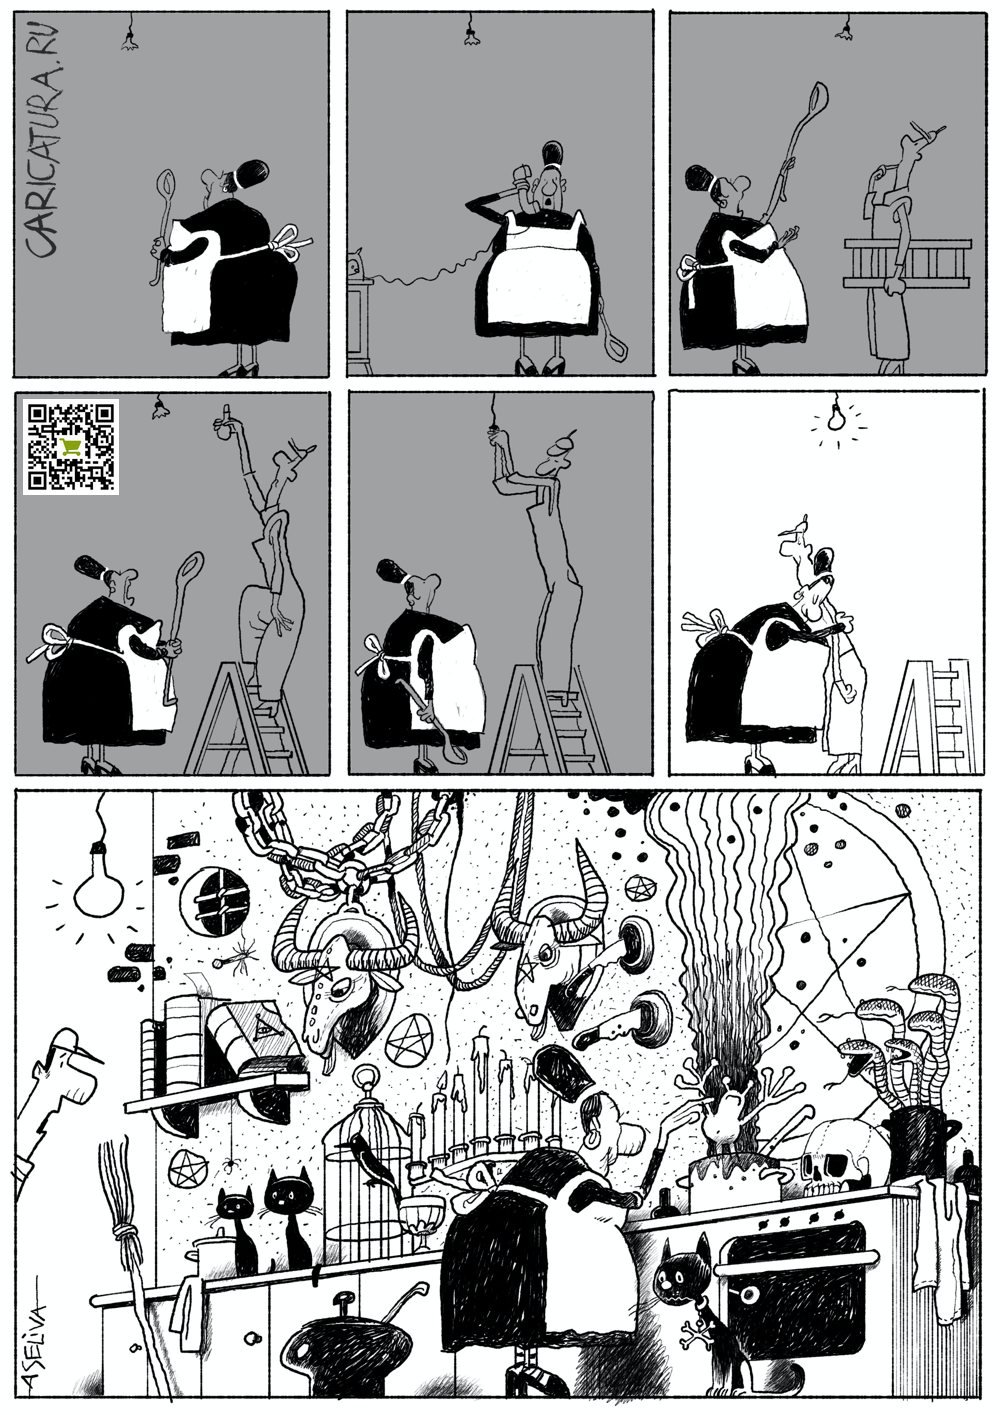 Комикс "Самые темные дела творятся при ярком свете", Андрей Селиванов